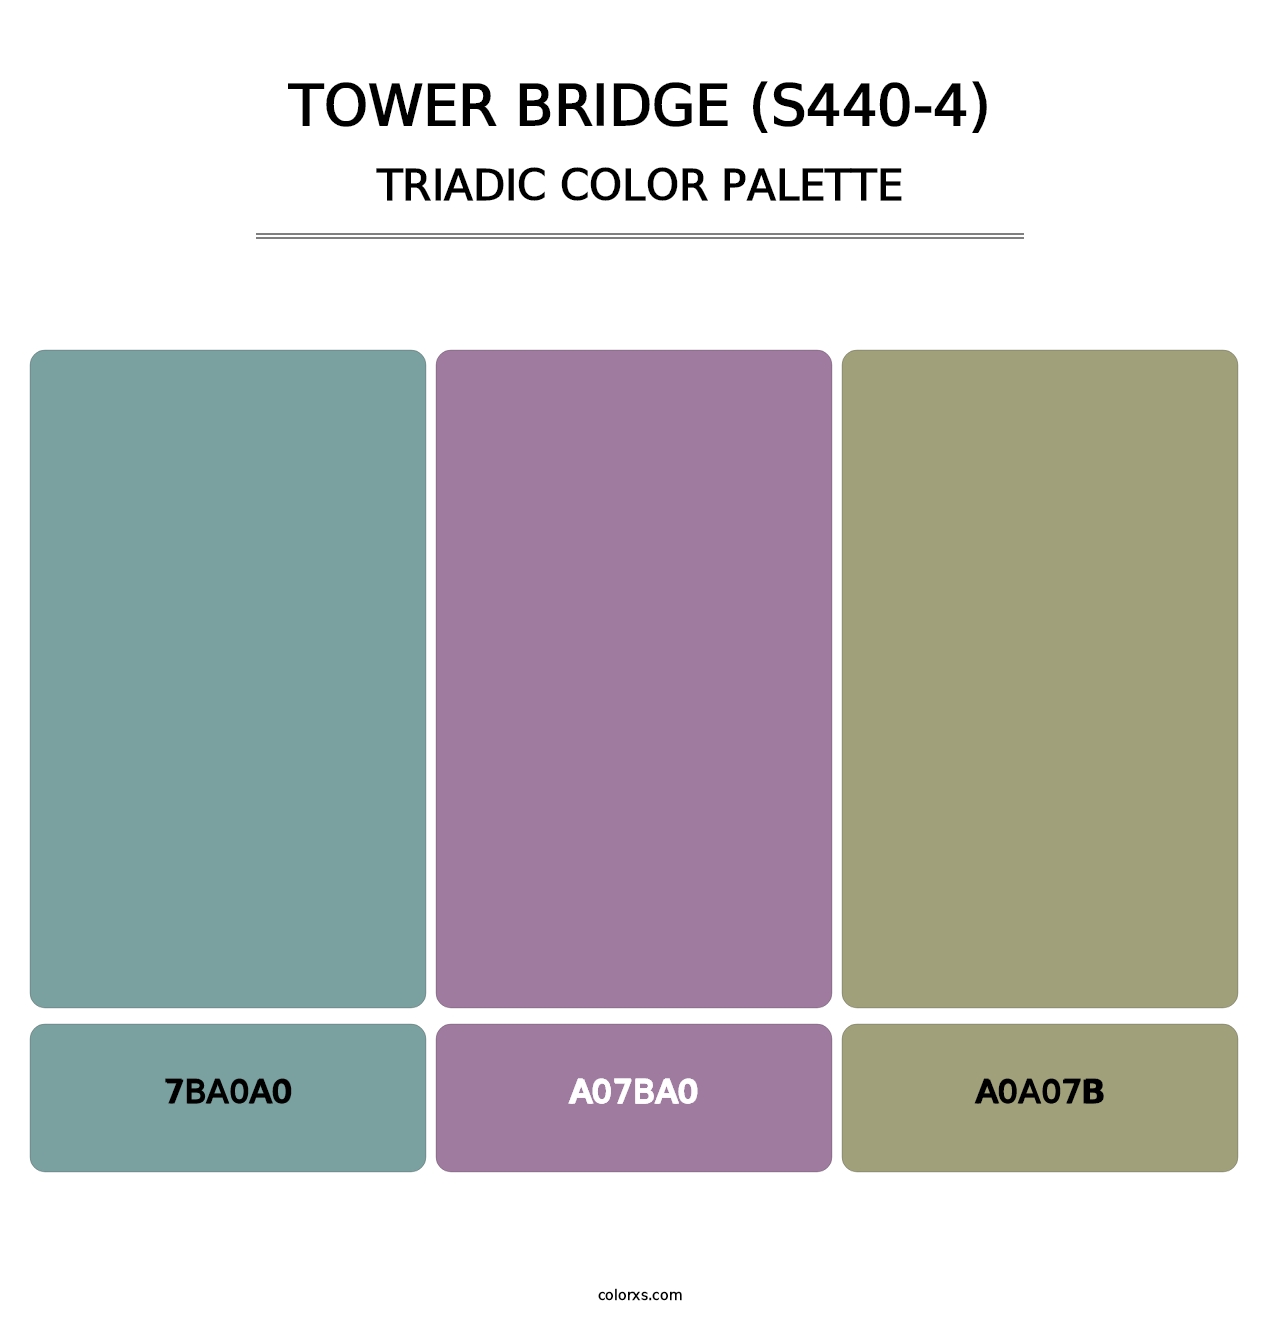 Tower Bridge (S440-4) - Triadic Color Palette